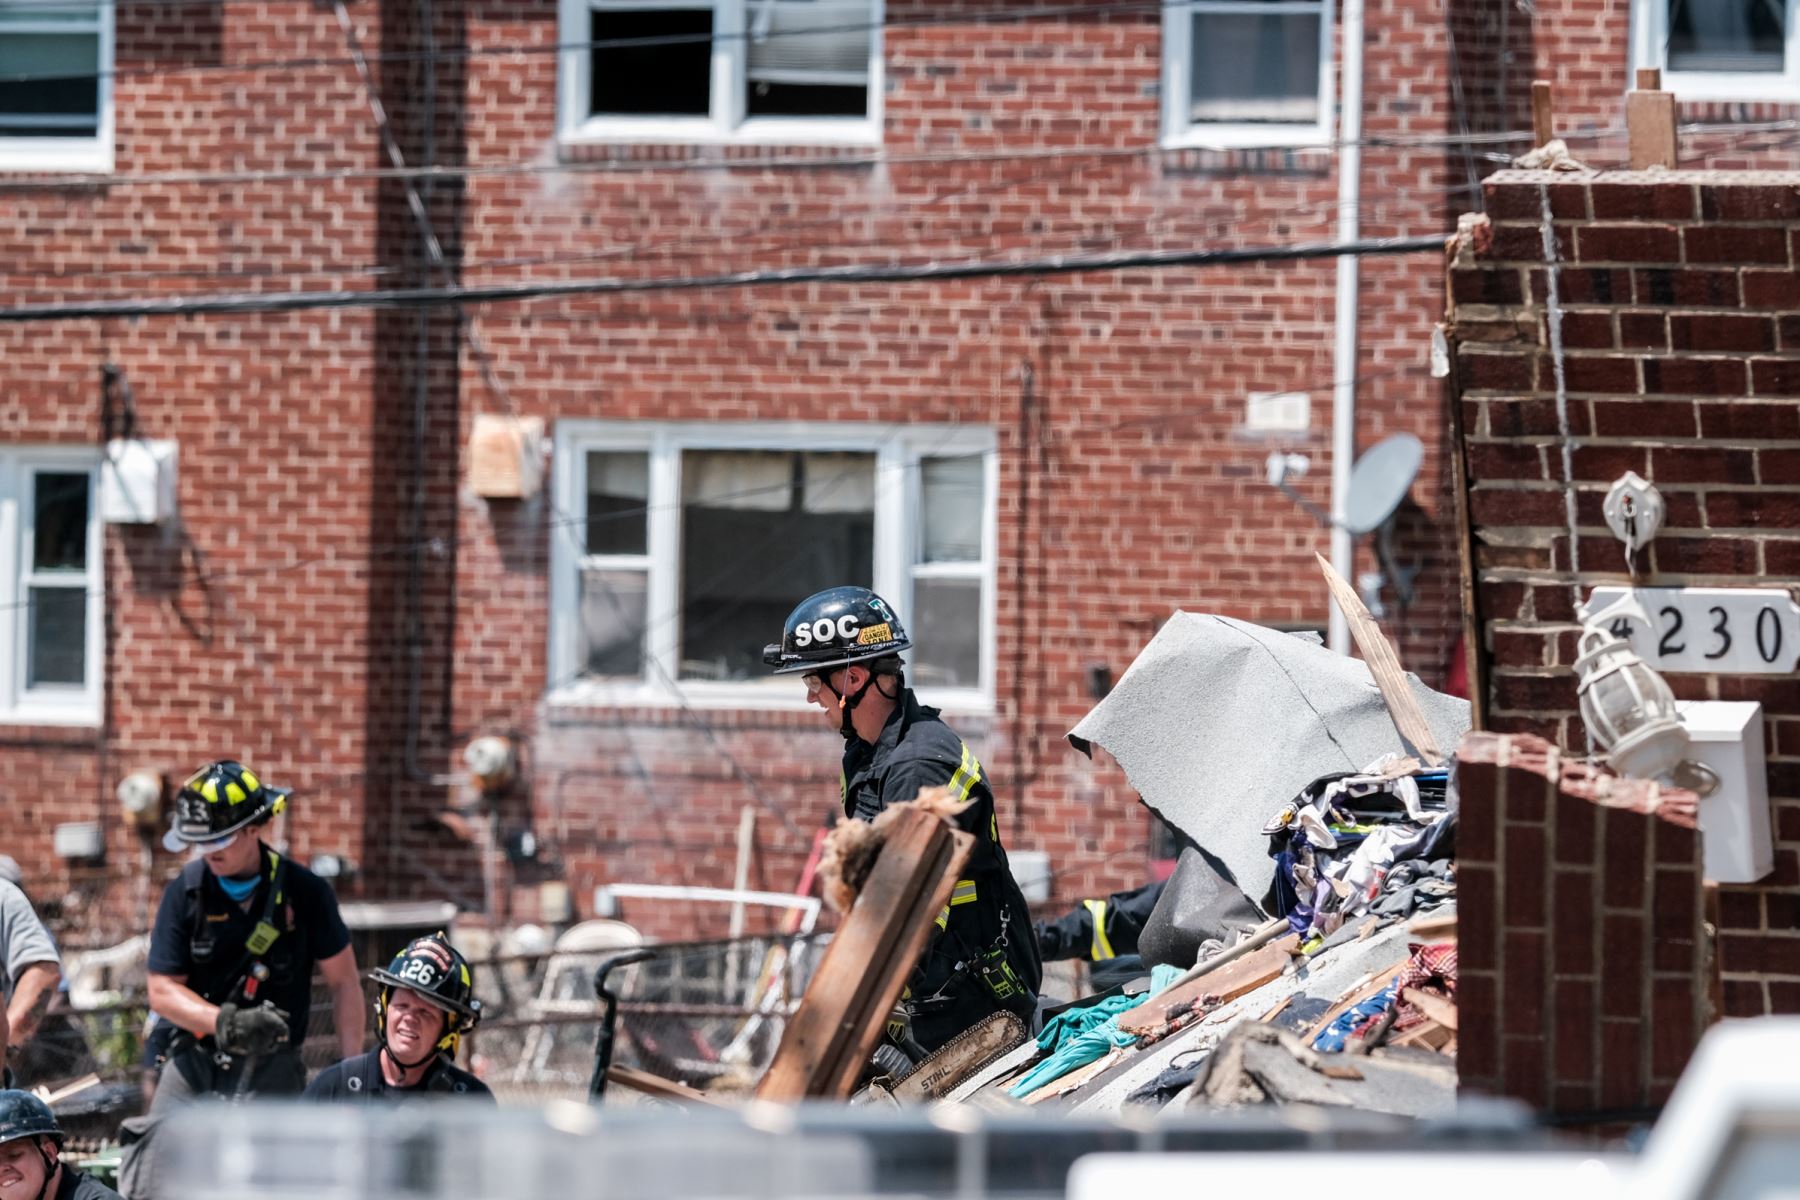 Los socorristas buscan sobrevivientes en el lugar de una explosión  en Baltimore, Maryland. Los primeros informes indican que una fuga de gas pudo haber causado la explosión masiva que arrasó tres casas, causando múltiples heridos y al menos una muerte.
Foto: AFP